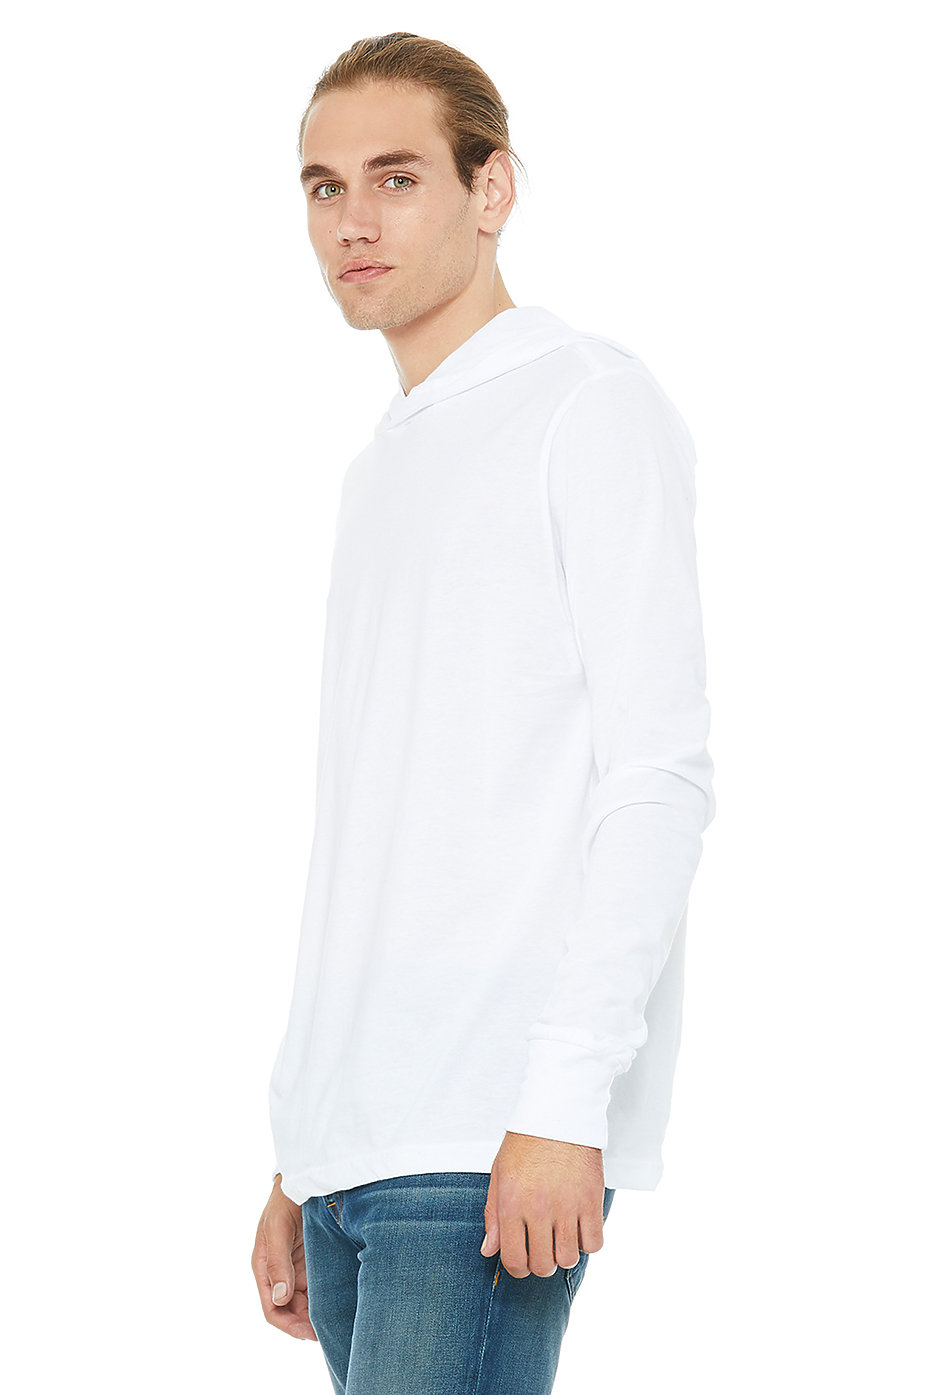 Wholesale Long Sleeve Hoodie, Custom Sweatshirts